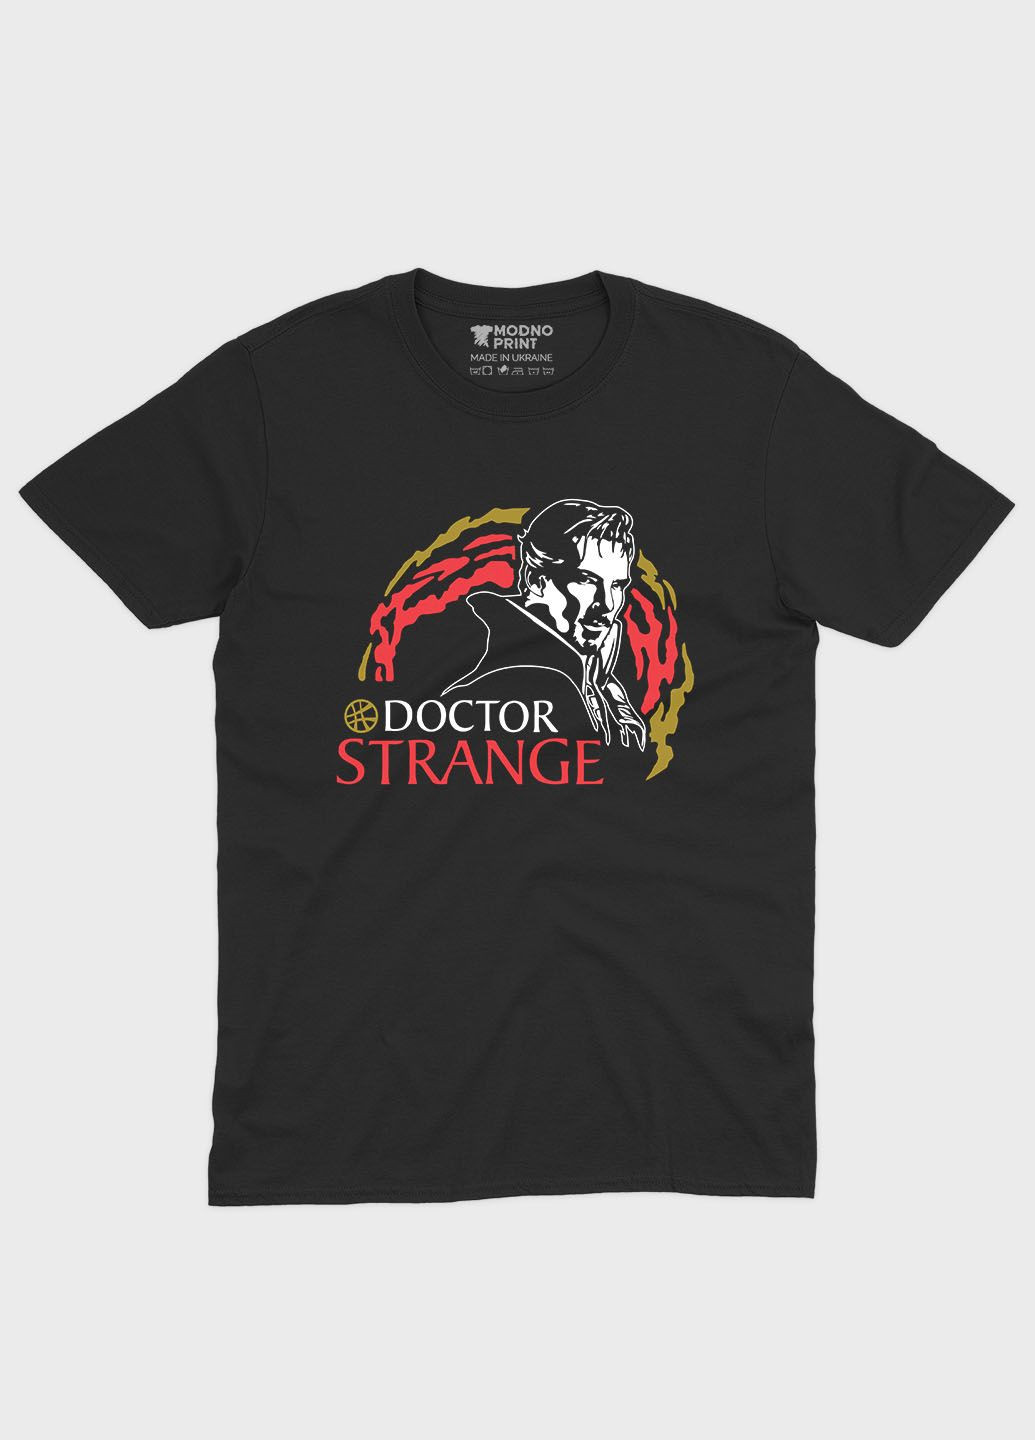 Чорна чоловіча футболка з принтом супергероя - доктор стрендж (ts001-1-bl-006-020-002) Modno